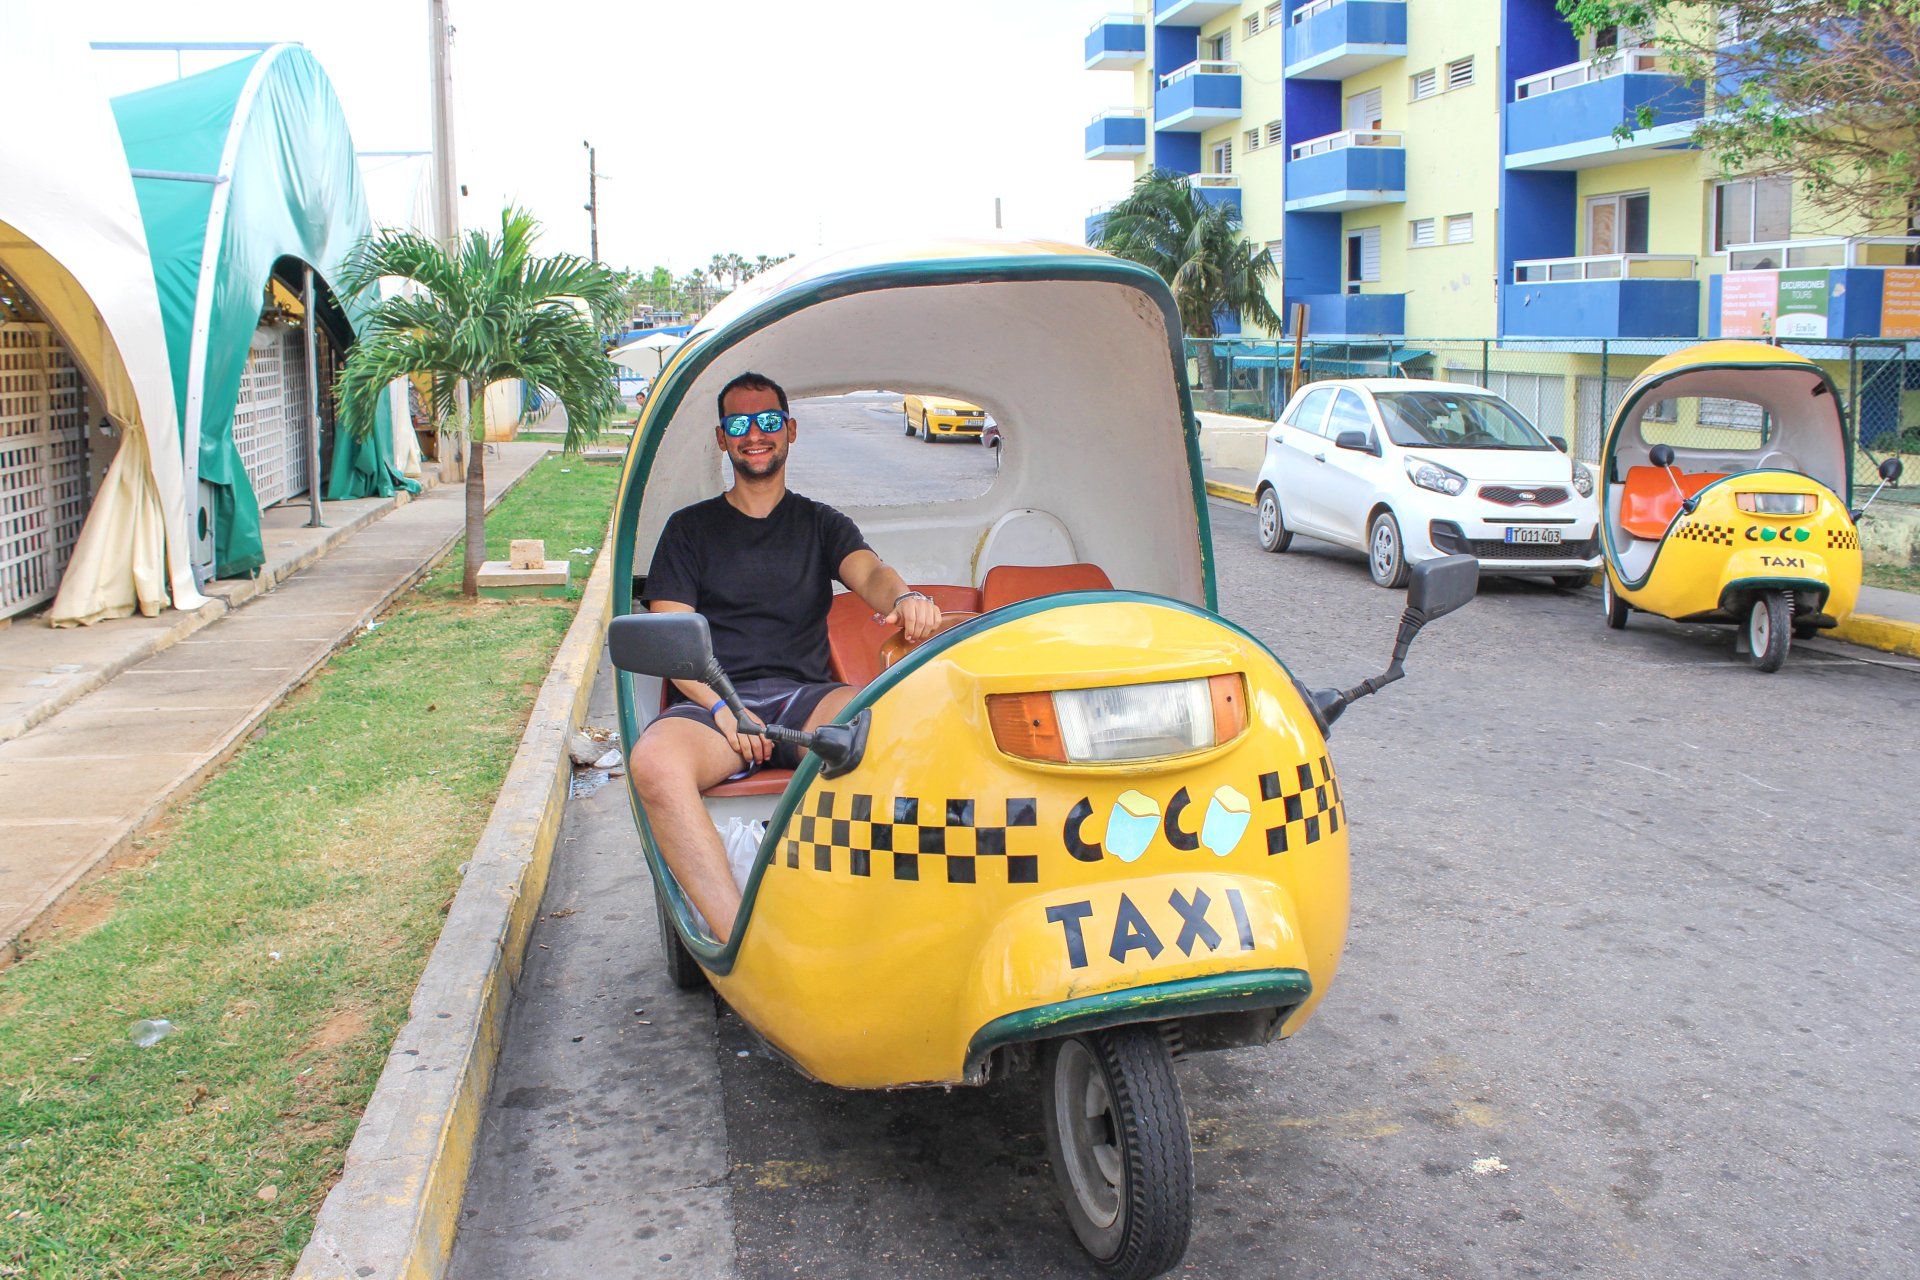 Cuba coco taxi